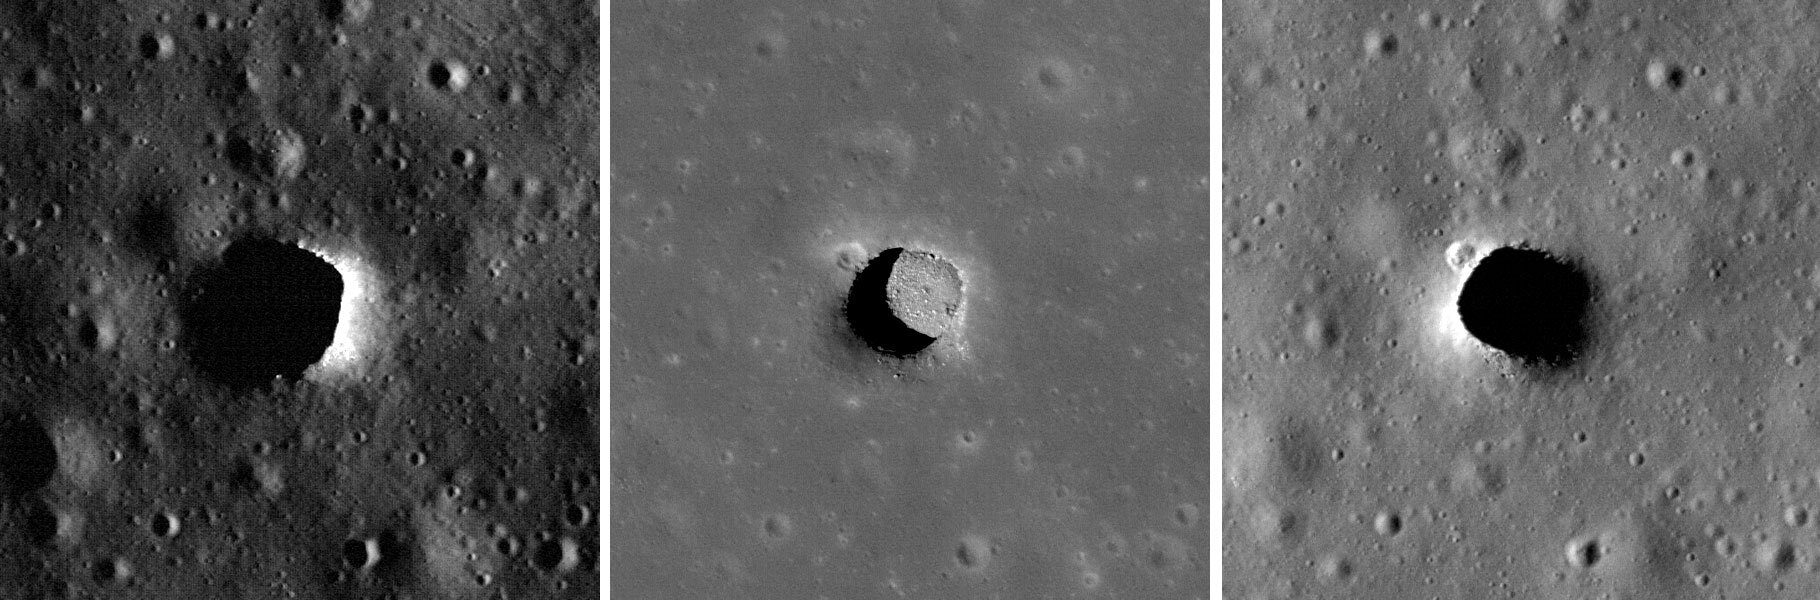 La Cámara del Orbitador de Reconocimiento Lunar de la NASA ahora ha tomado imágenes del pozo de Marius Hills tres veces, cada vez con una iluminación muy diferente. El panel central, con el Sol en lo alto, brinda a los científicos una excelente vista del piso de la fosa de Marius Hills. El pozo Marius tiene unos 34 metros de profundidad y 65 por 90 metros de ancho